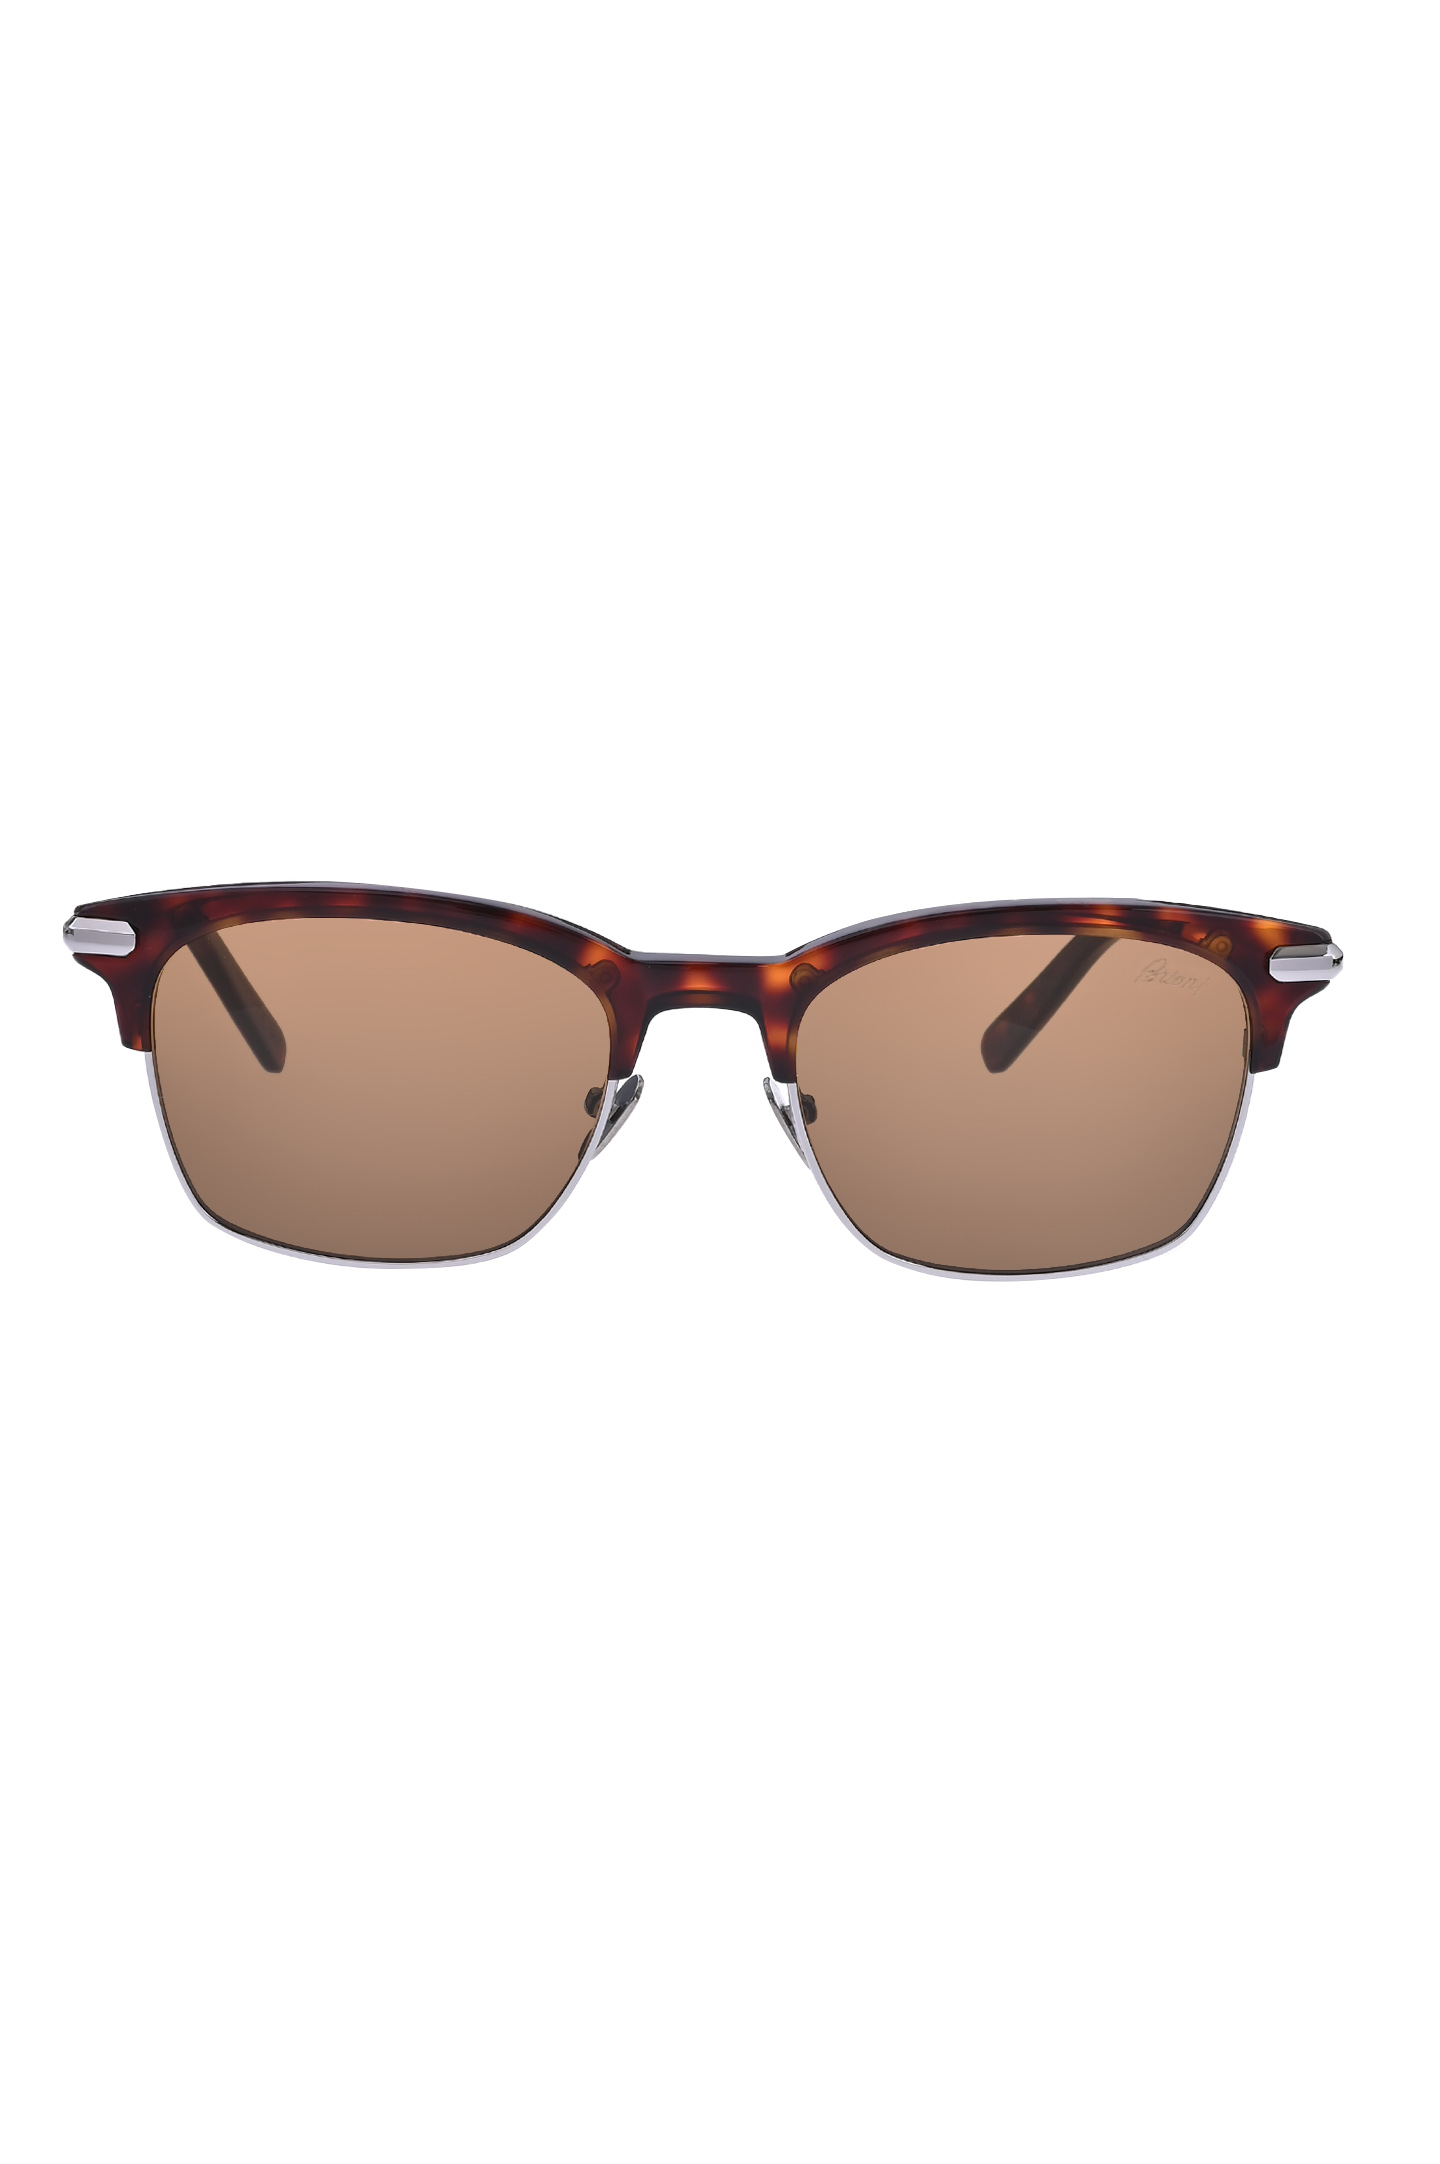 Солнцезащитные очки BRIONI ODE600 P3ZAC, цвет: Коричневый, Мужской